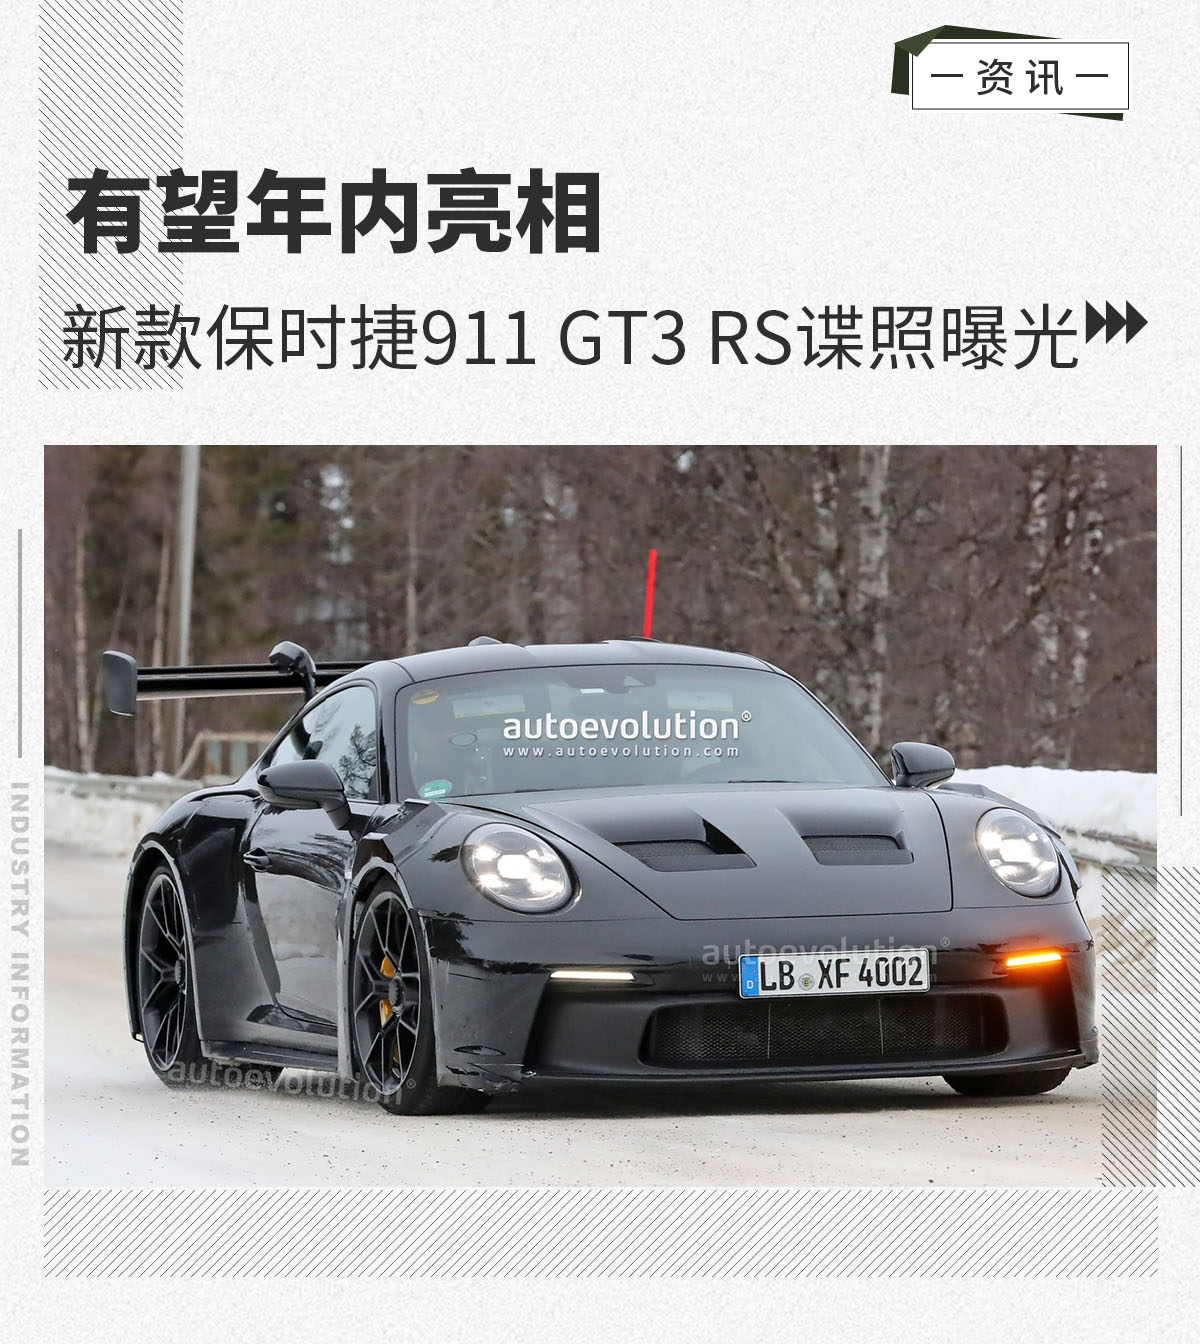 有望年内亮相 新款保时捷911 GT3 RS谍照曝光